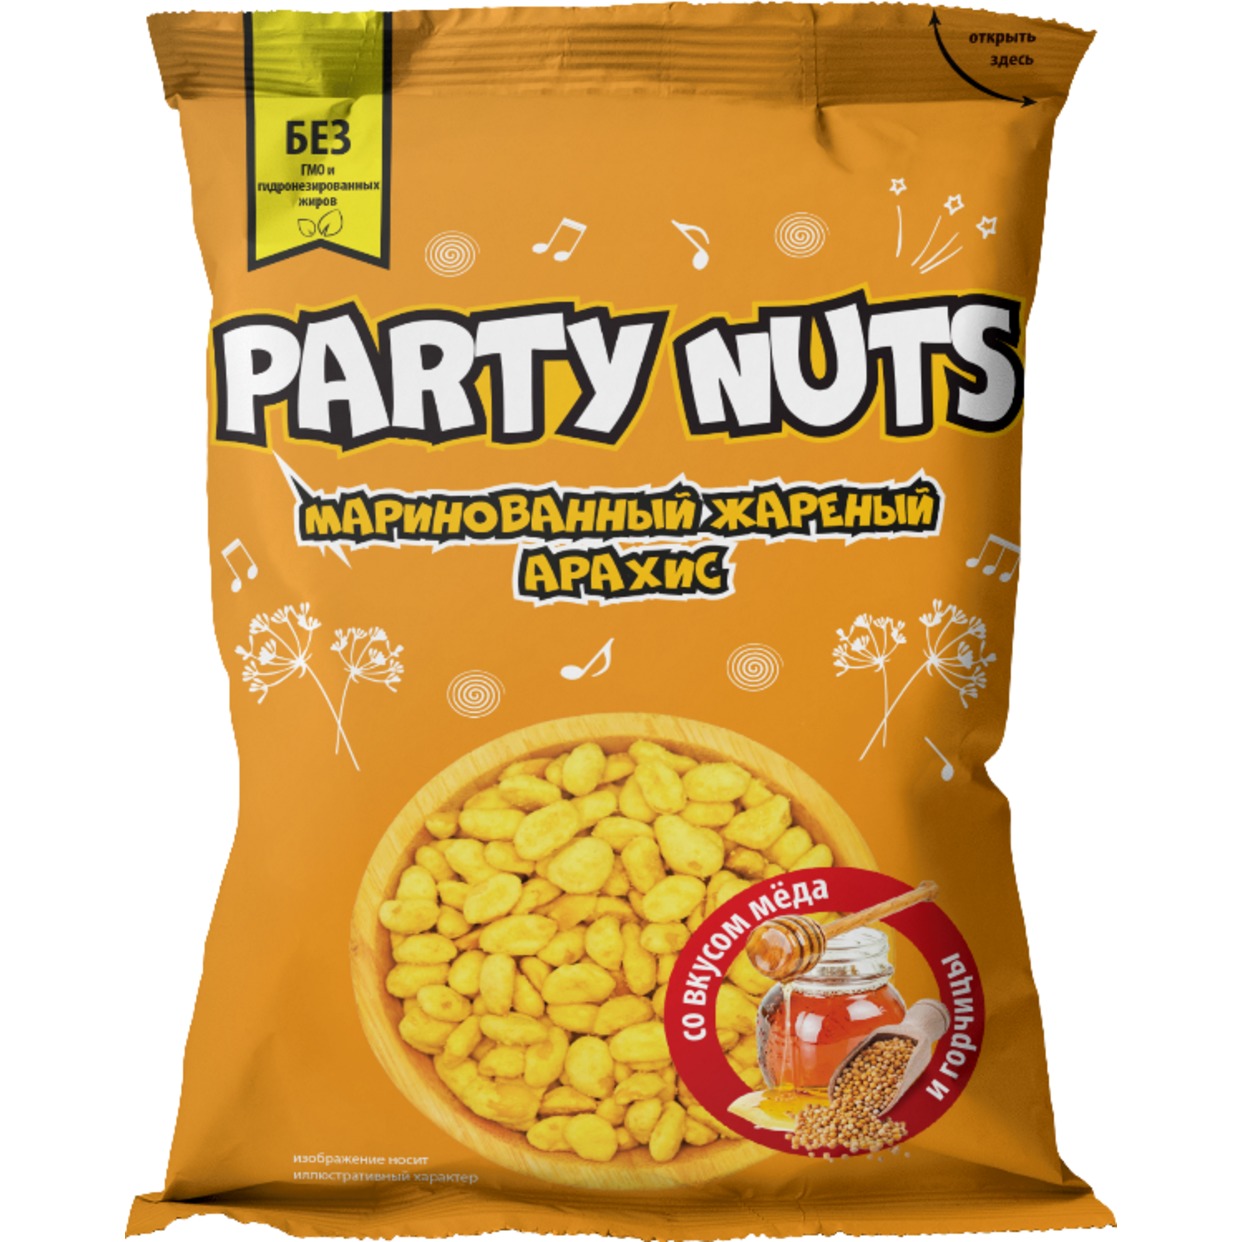 Маринованный жареный арахис со вкусом меда и горчицы "PARTY NUTS" 70 гр по акции в Пятерочке